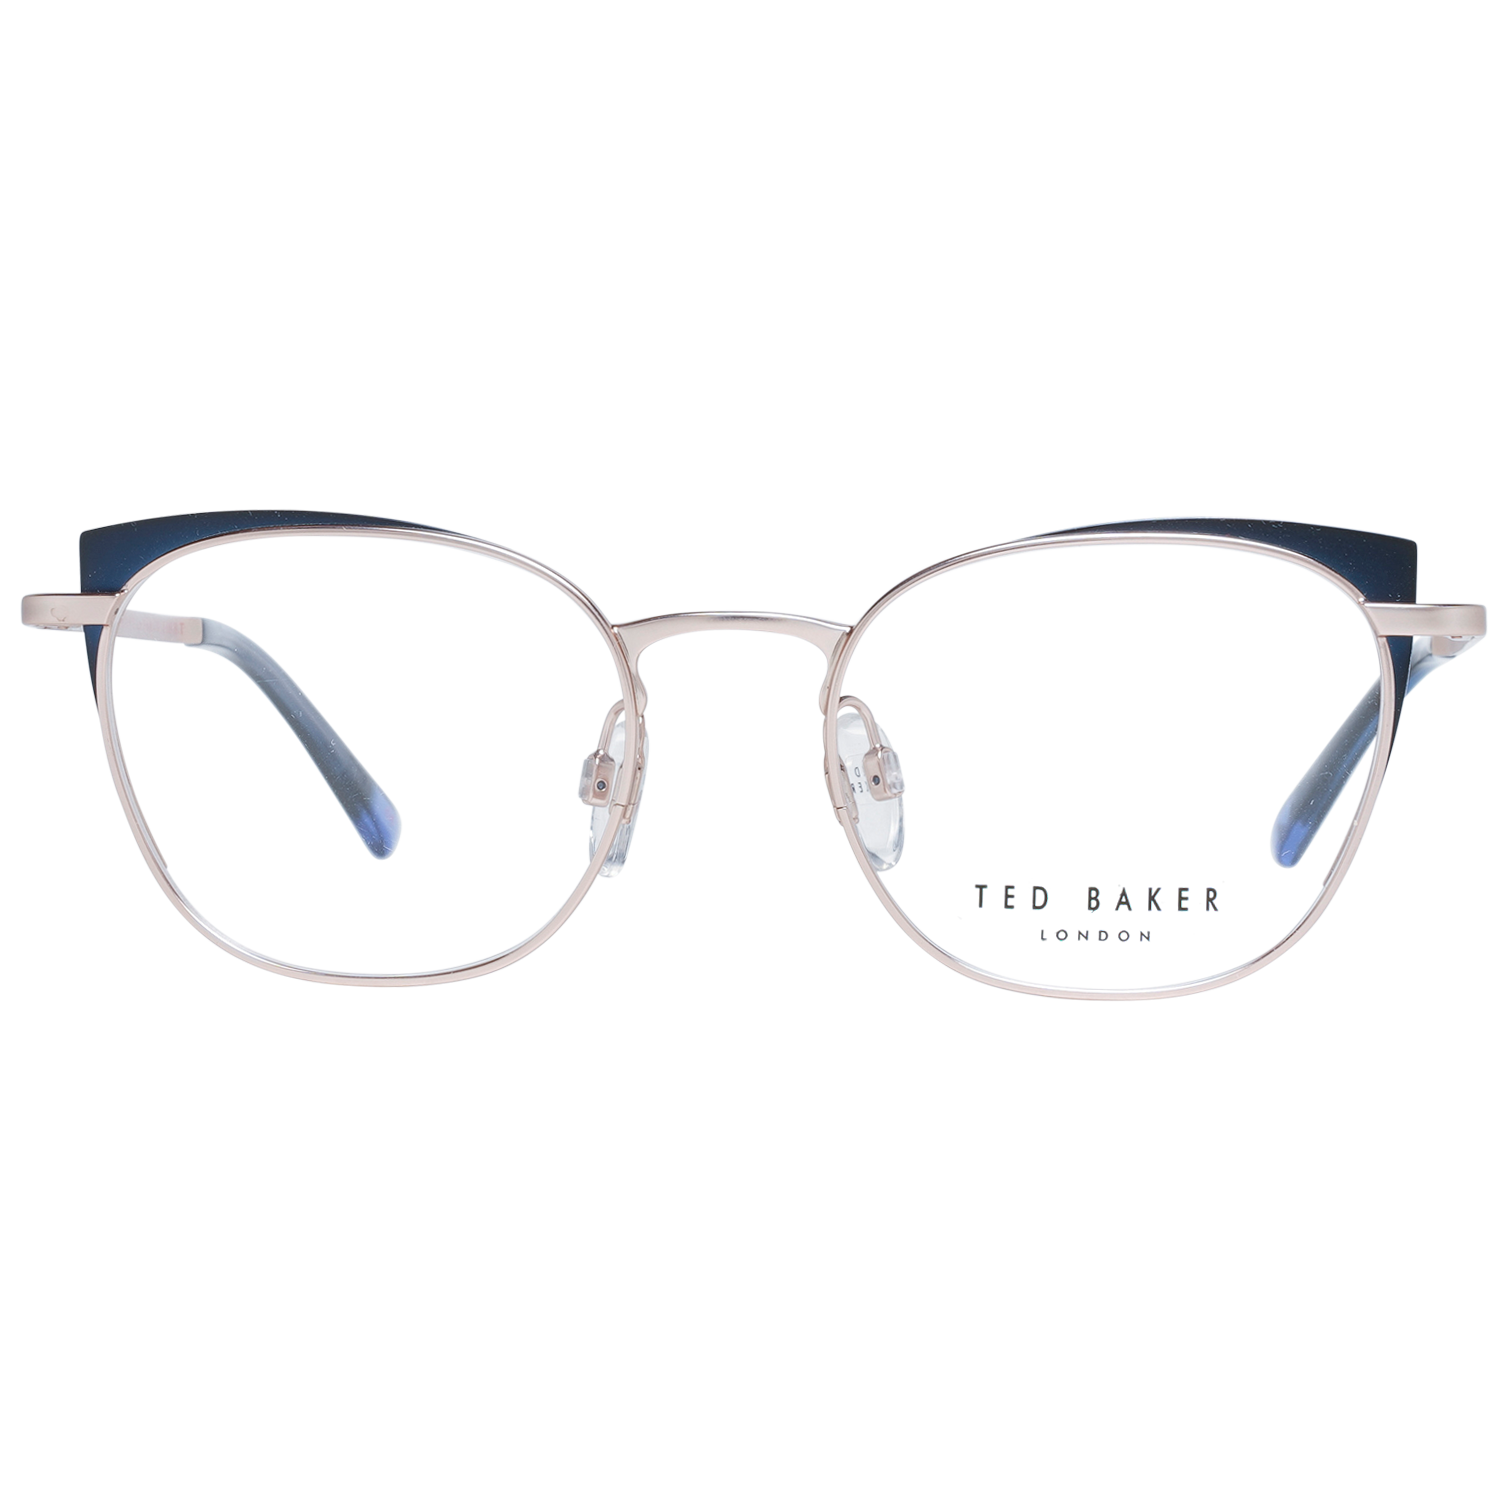 Ted Baker Frames Ted Baker Prescription Glasses Optical Frame TB2273 689 49 Eyeglasses Eyewear UK USA Australia 